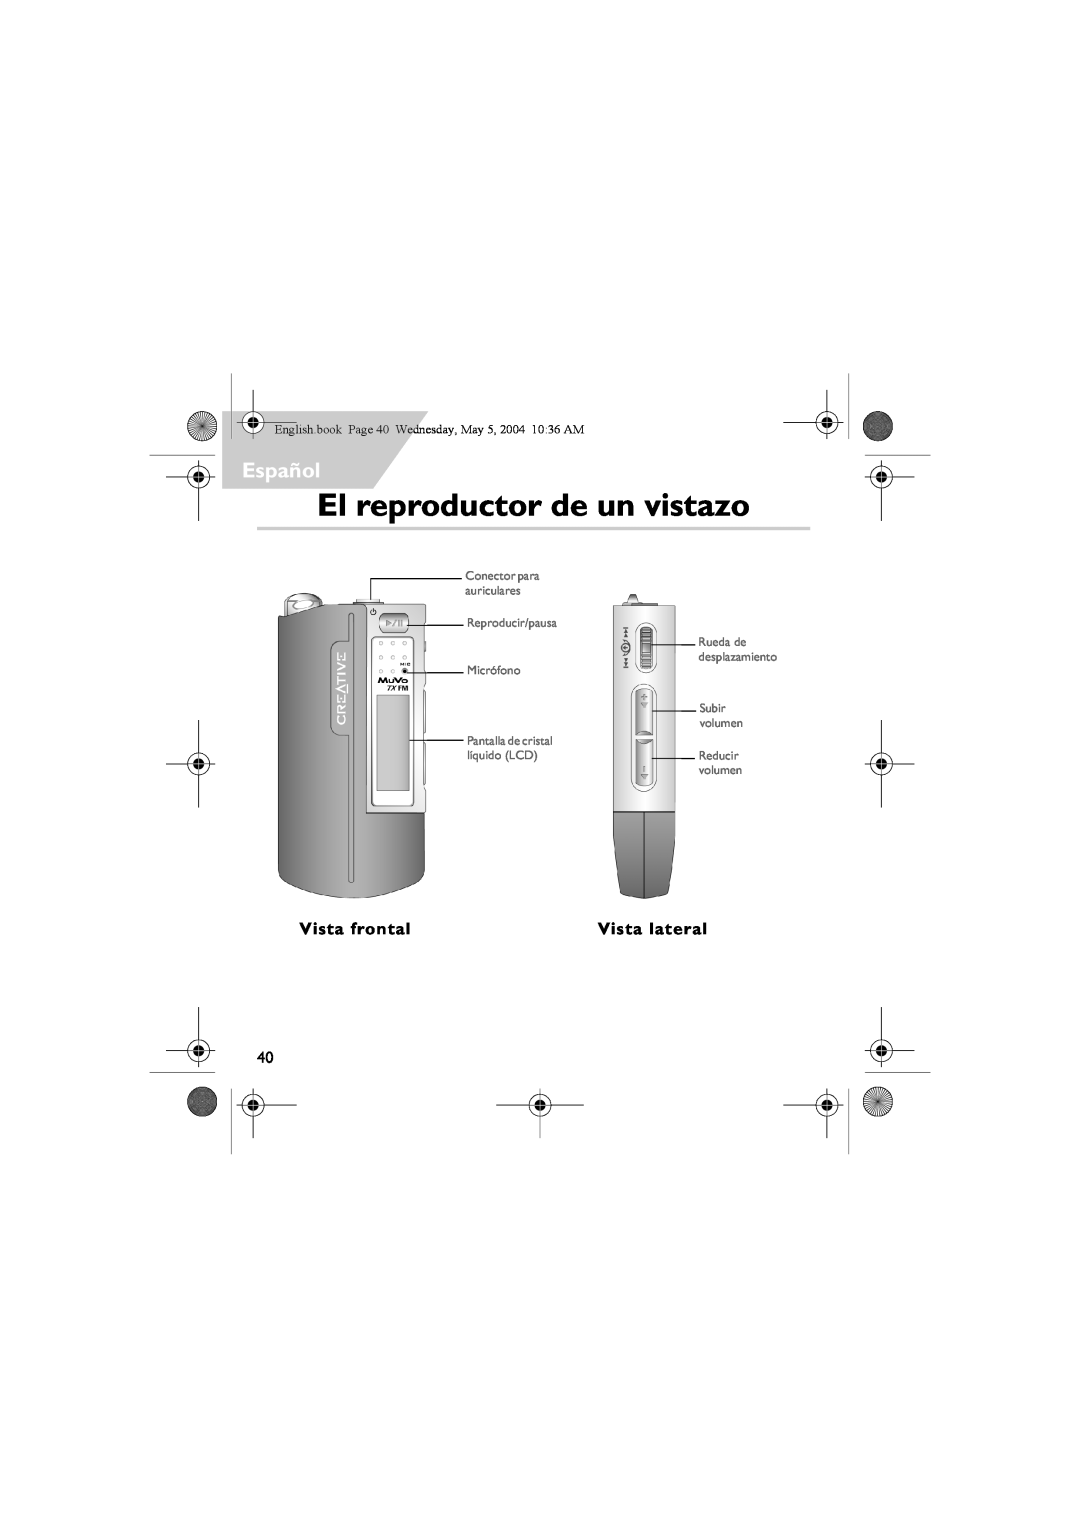 Musica CD Player manual El reproductor de un vistazo, Español, Vista frontal, Vista lateral, Rueda de desplazamiento 